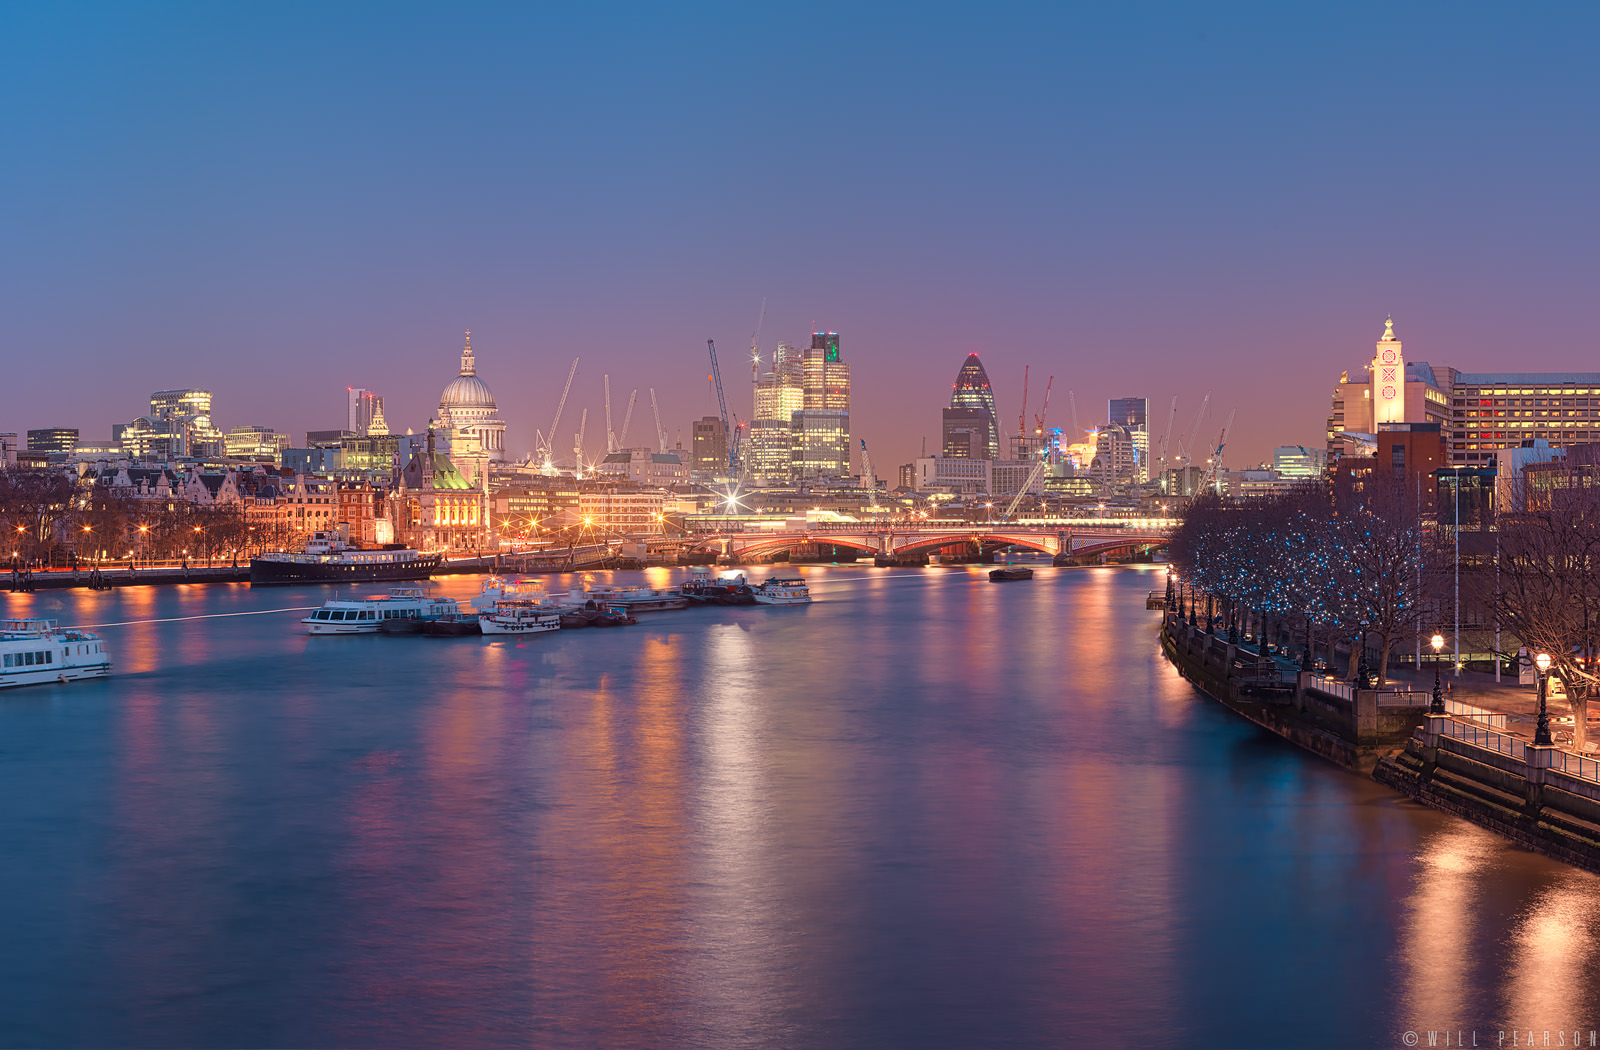 Waterloo Sunset Panorama - Will Pearson - Panoramic Photographer London